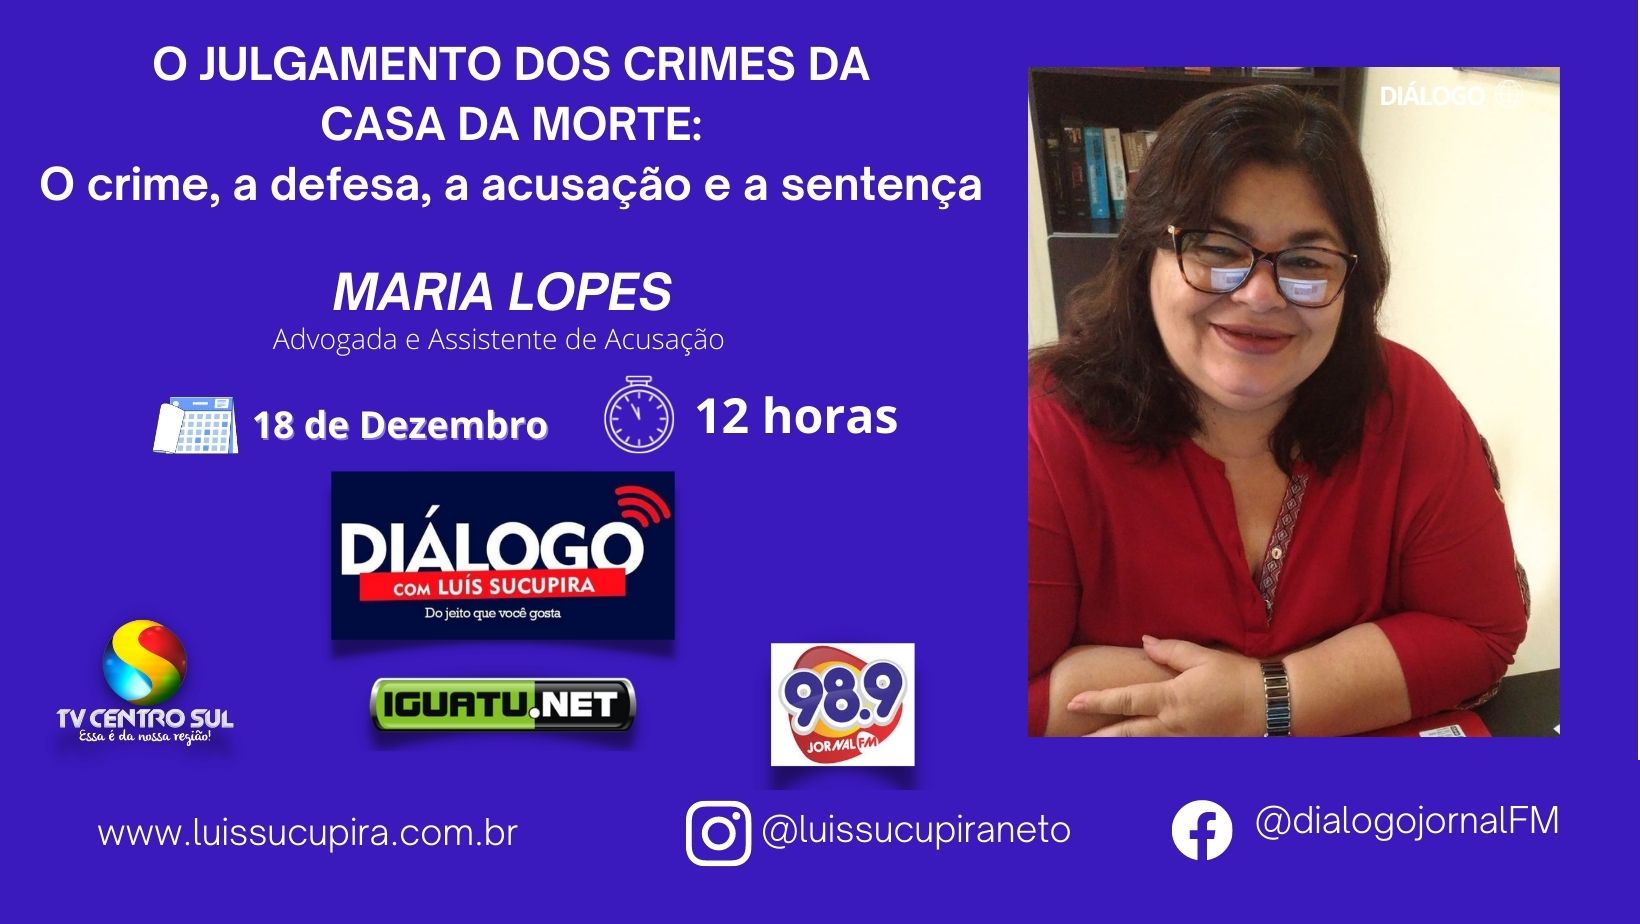 PODCAST DIÁLOGO – O Julgamento dos crimes da Casa da Morte em Iguatu